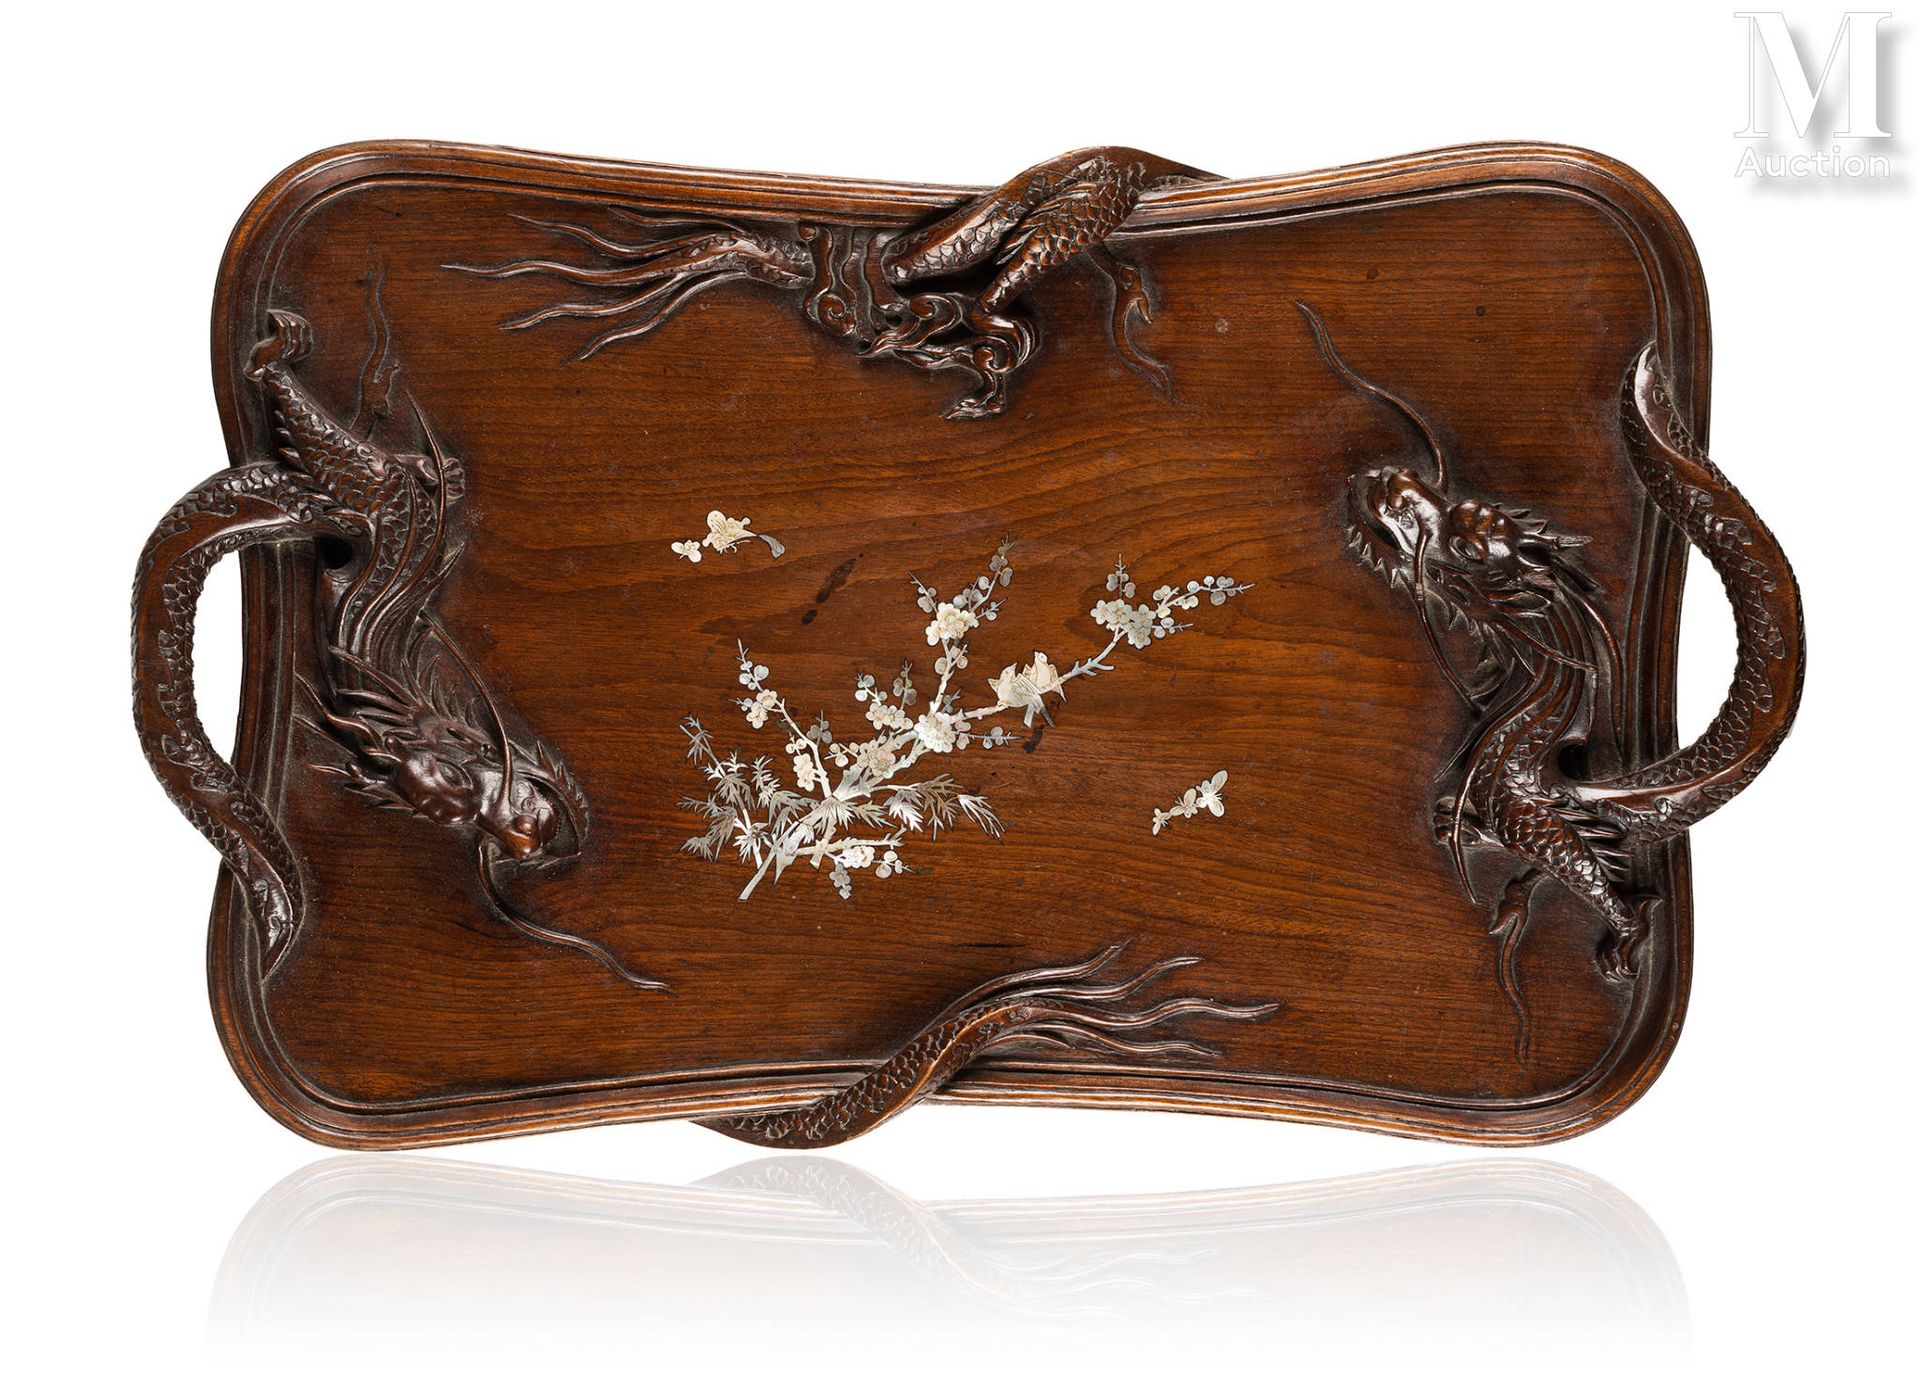 VIETNAM, XXe siècle Bandeja de madera tallada

Forma cuadrangular, con decoració&hellip;